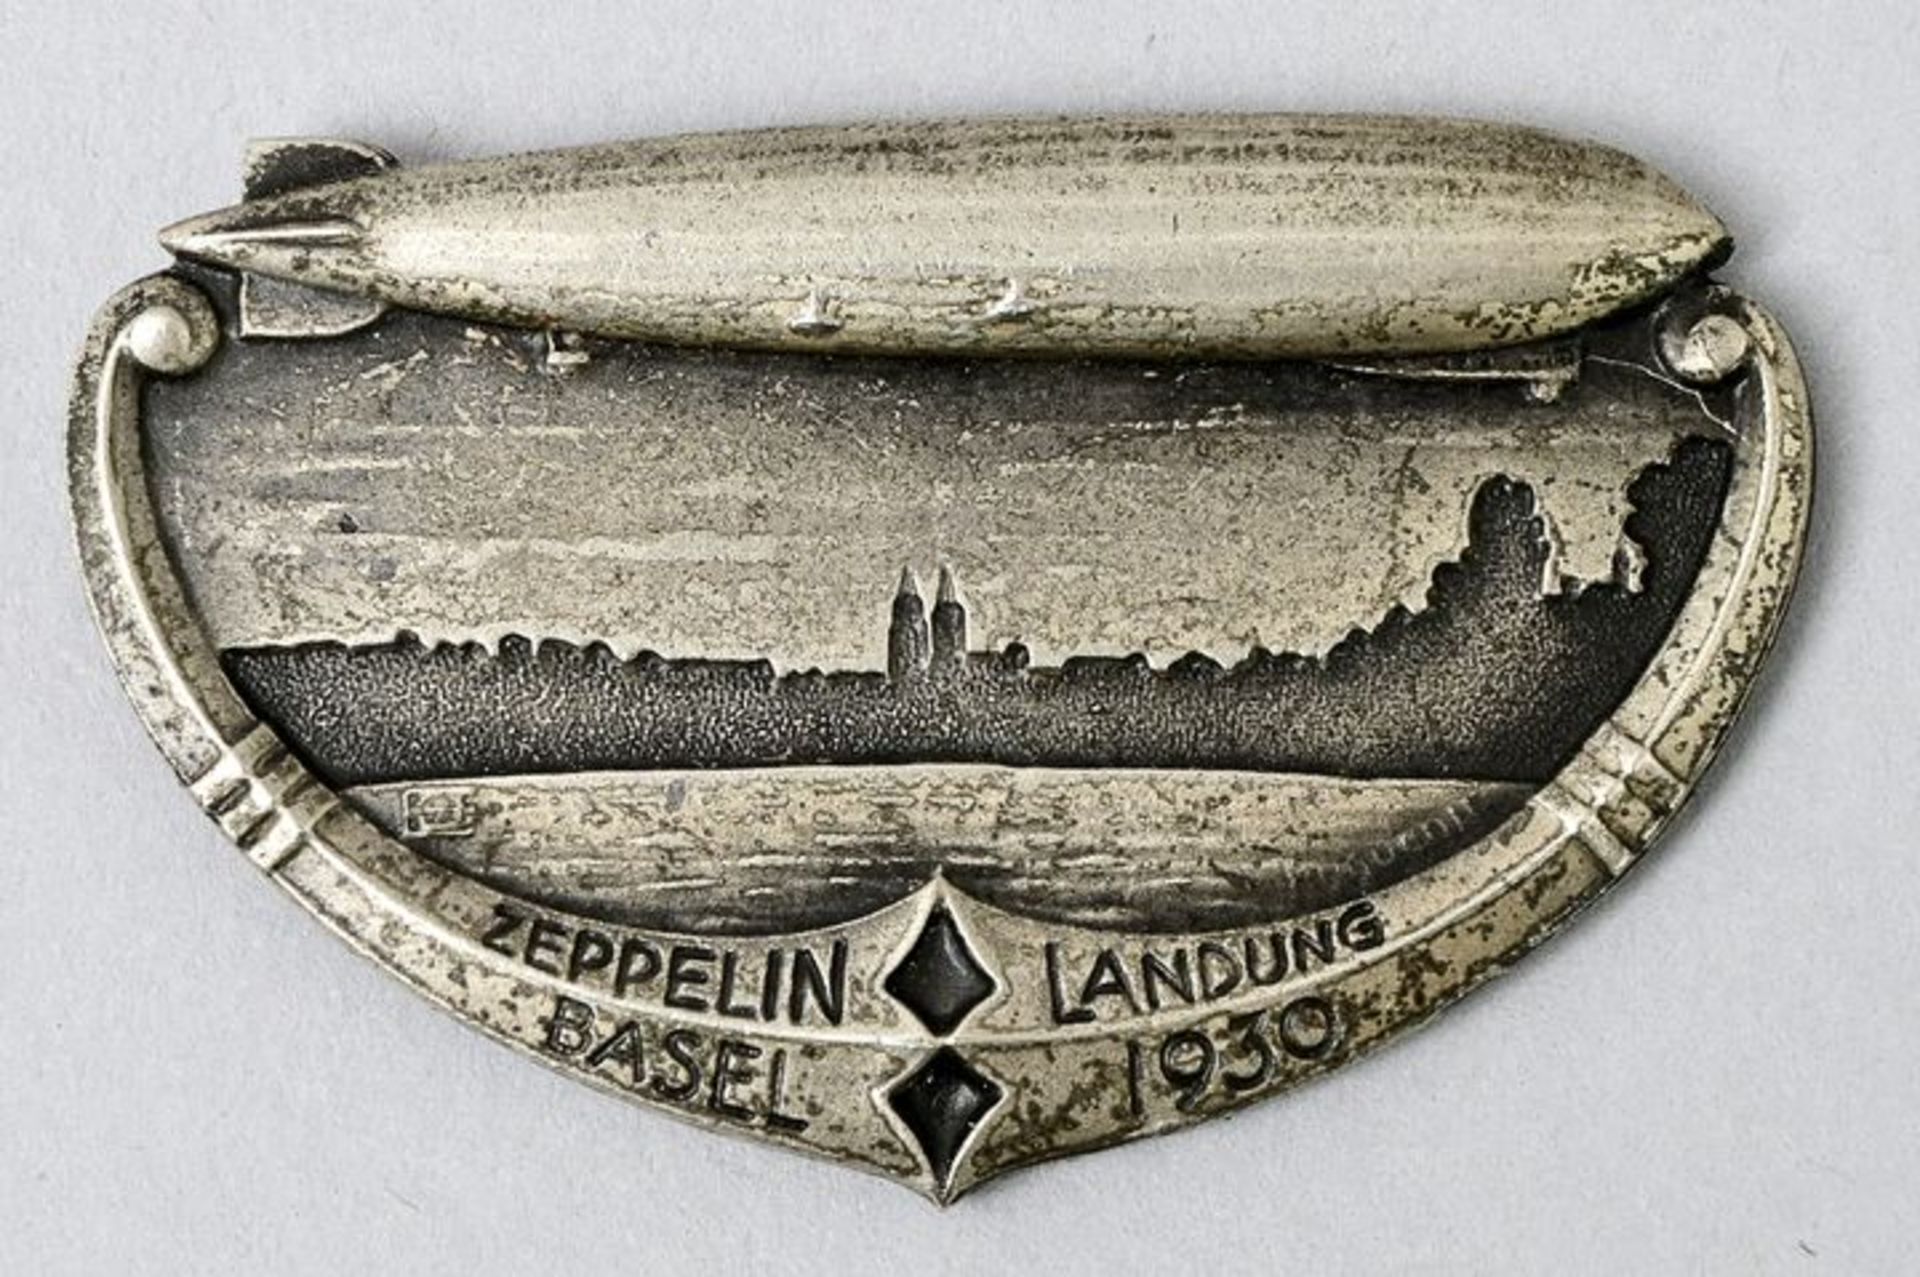 Brosche Zeppelin Landung / brooch